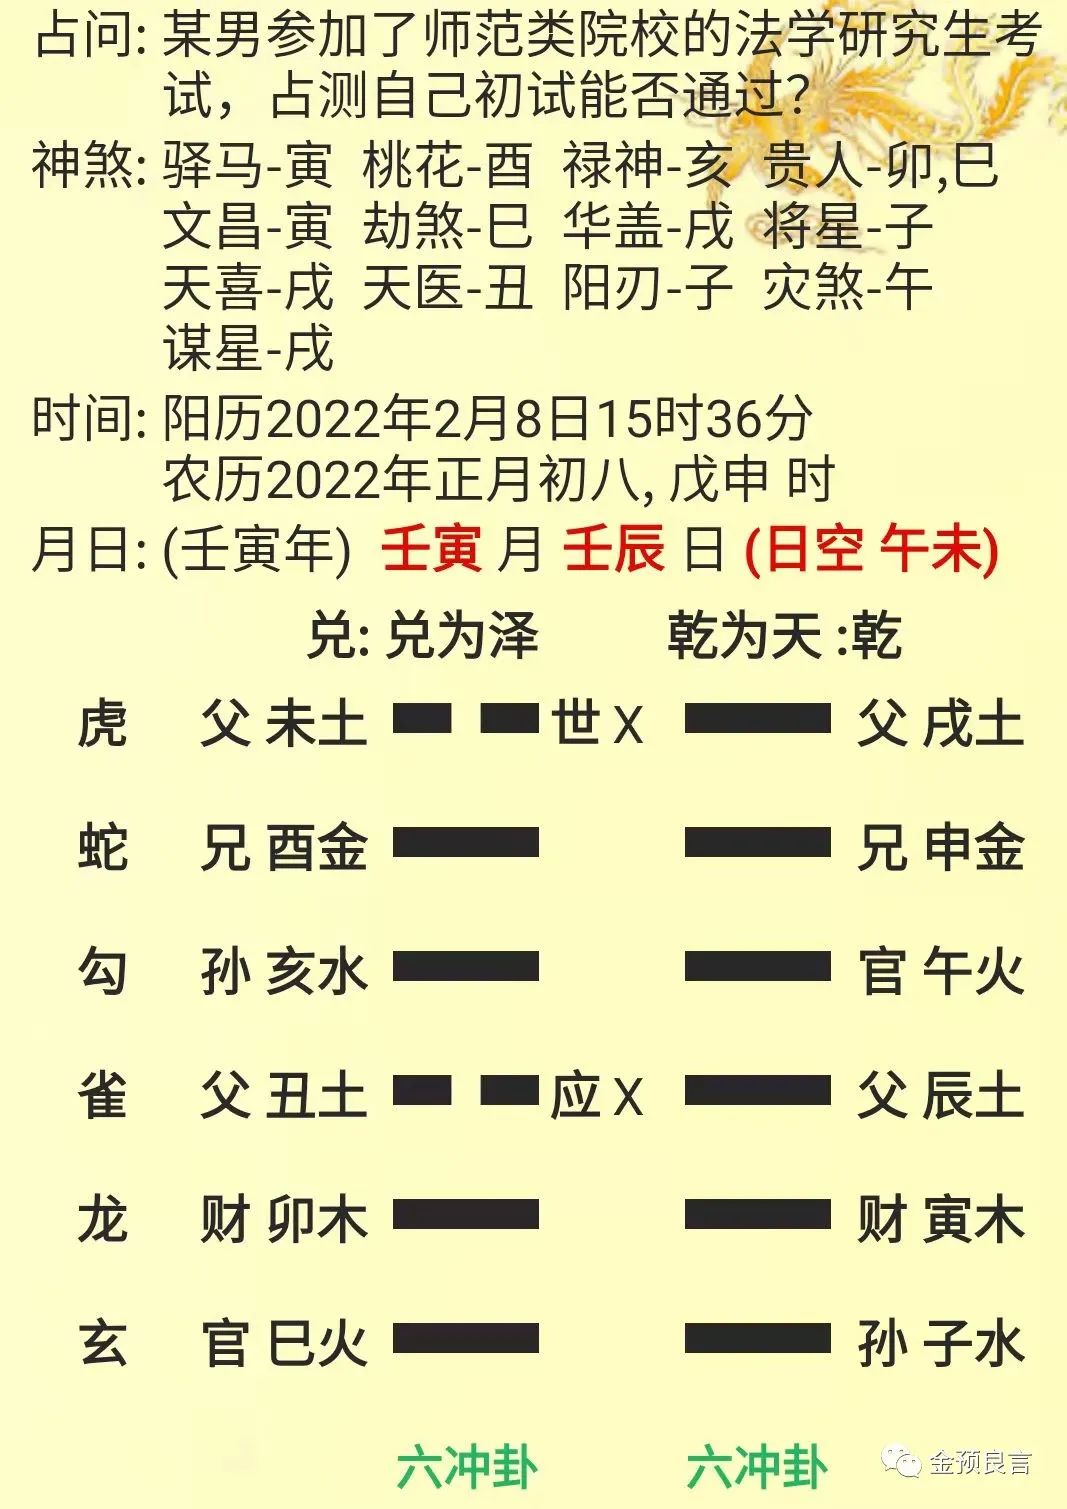 2015年3月12日六爻教学研讨案例发布